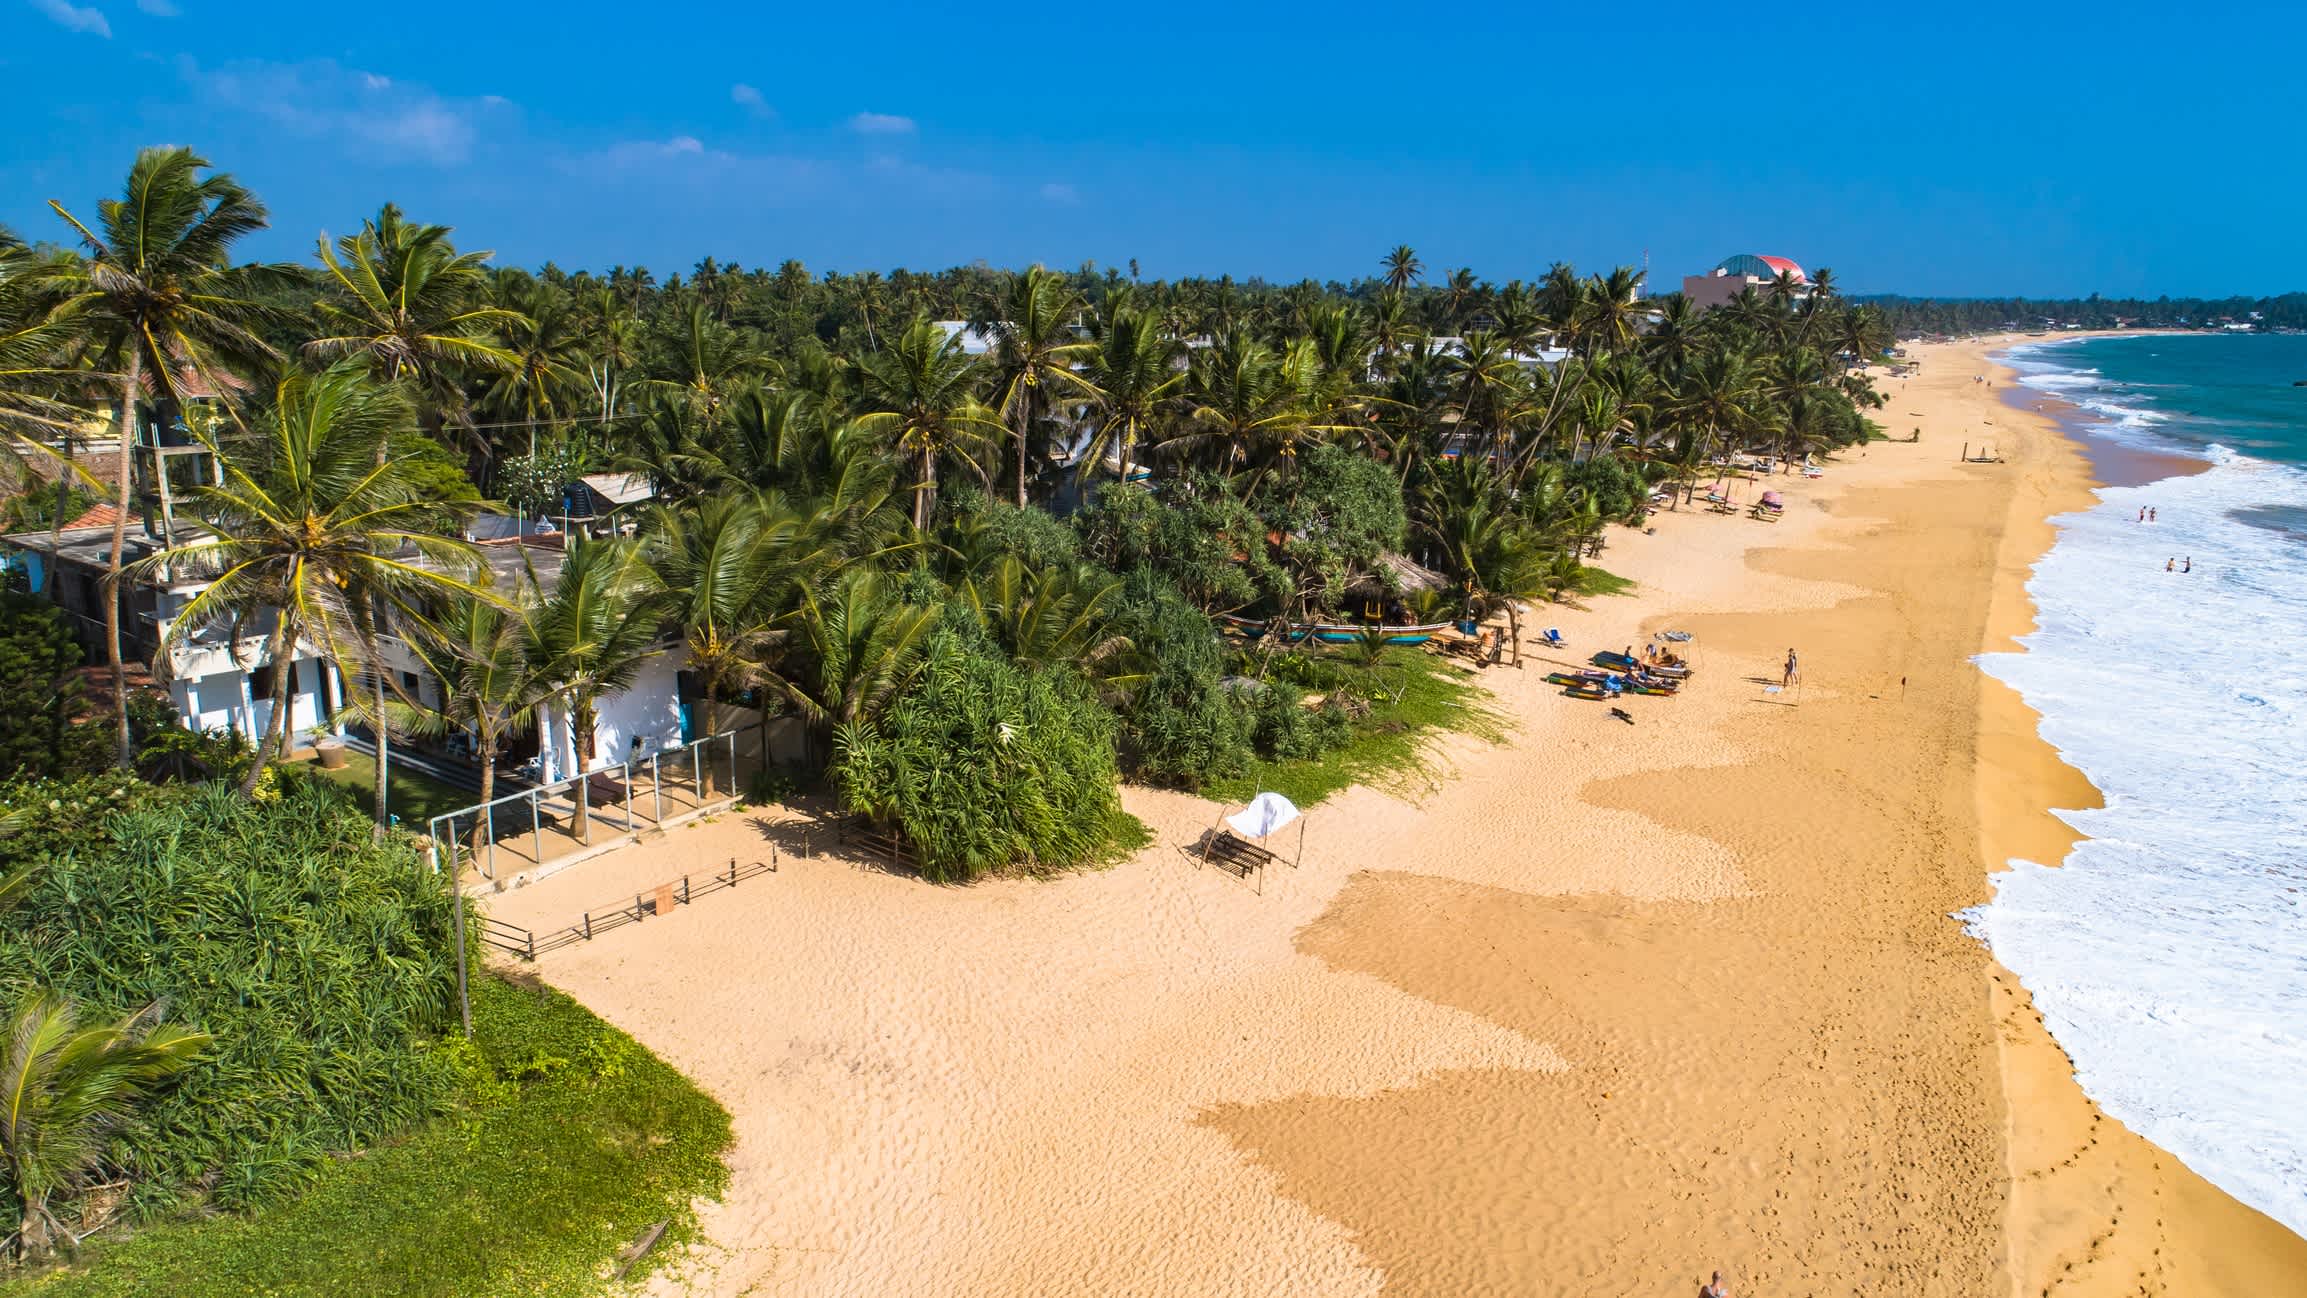 Vue aérienne du sable doré de la plage de Hikkaduwa entourée de palmiers au Sri Lanka